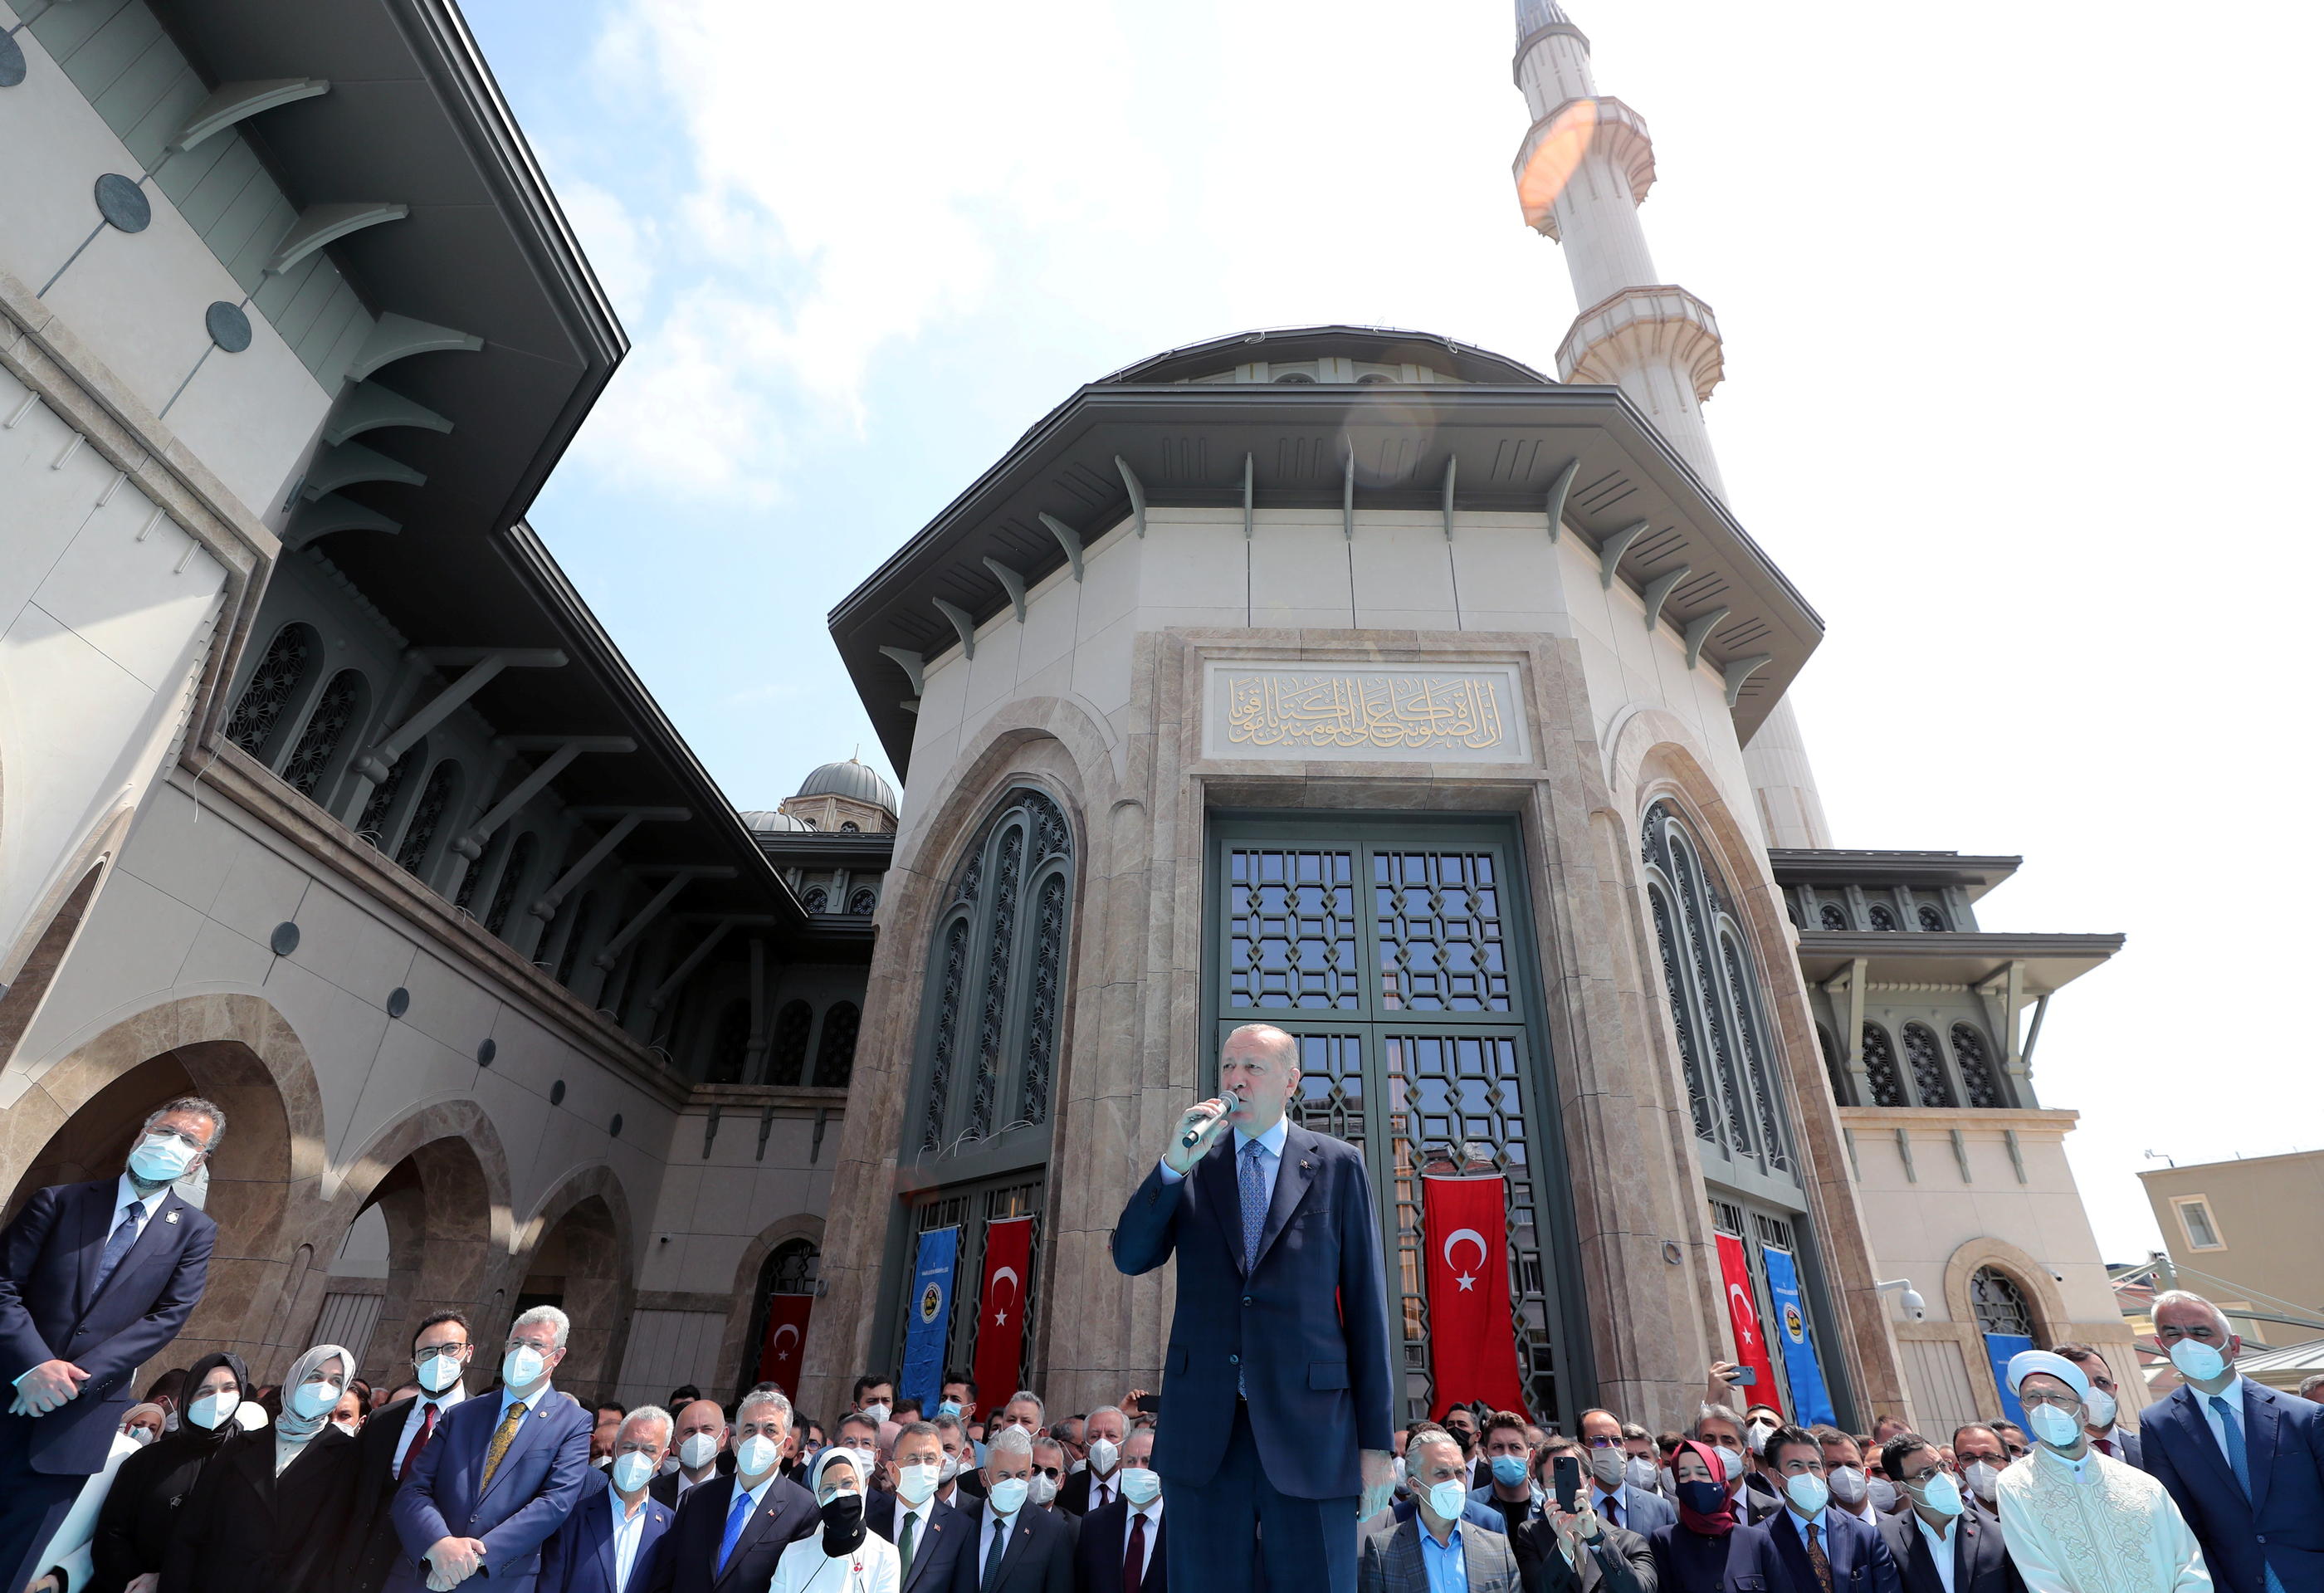 turquie erdogan inaugure la premiere mosquee de la place taksim d istanbul le parisien